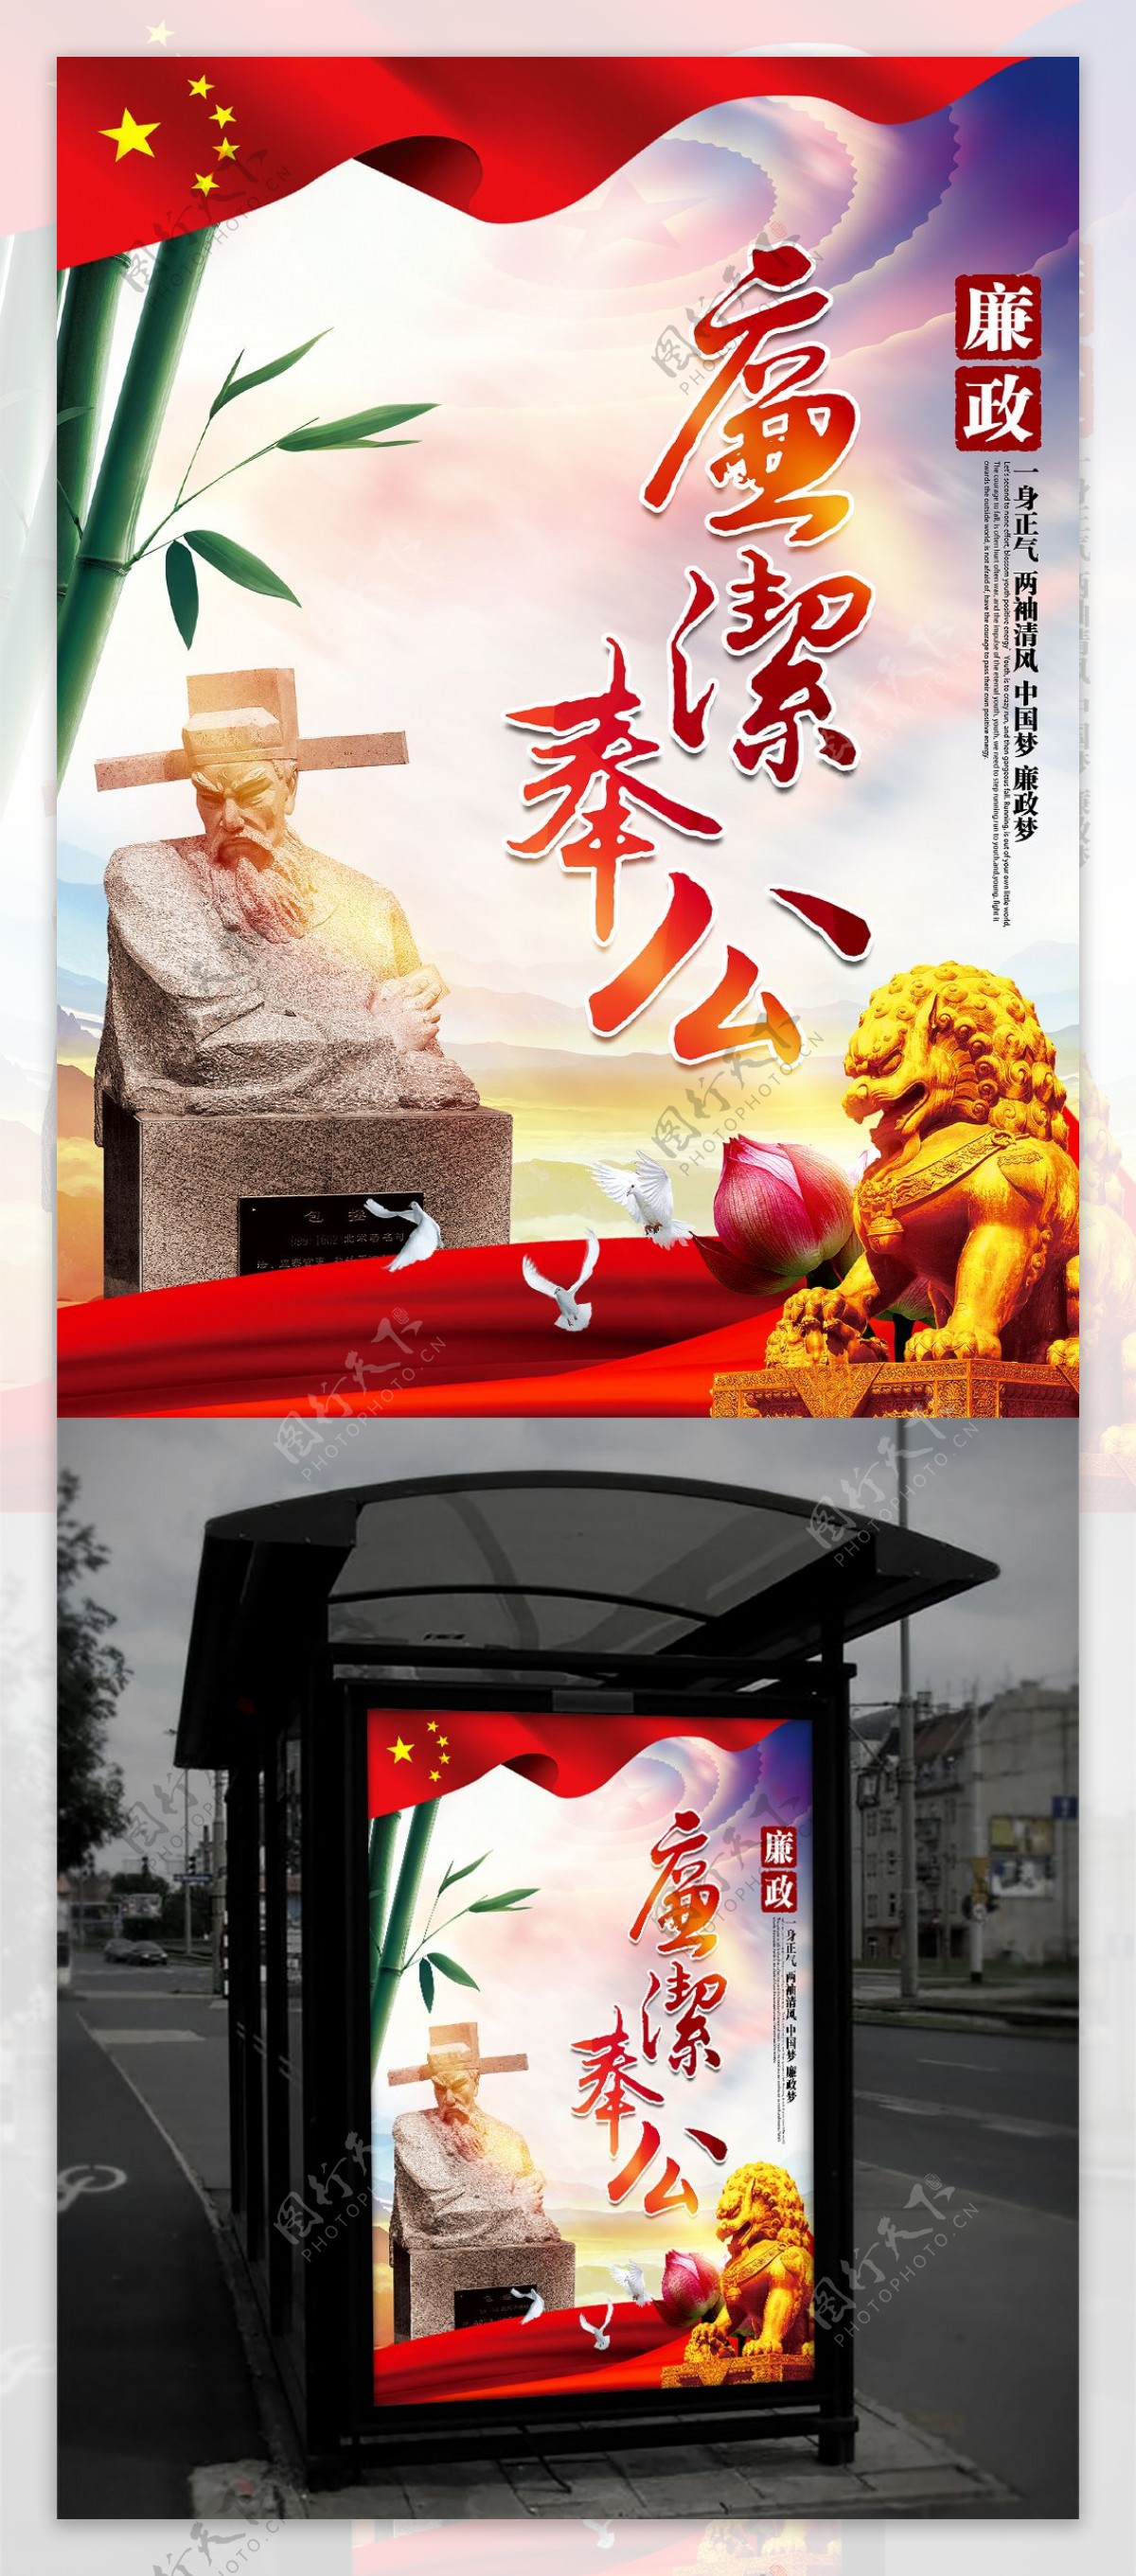 廉洁奉公唯美中国风廉政文化主题海报设计